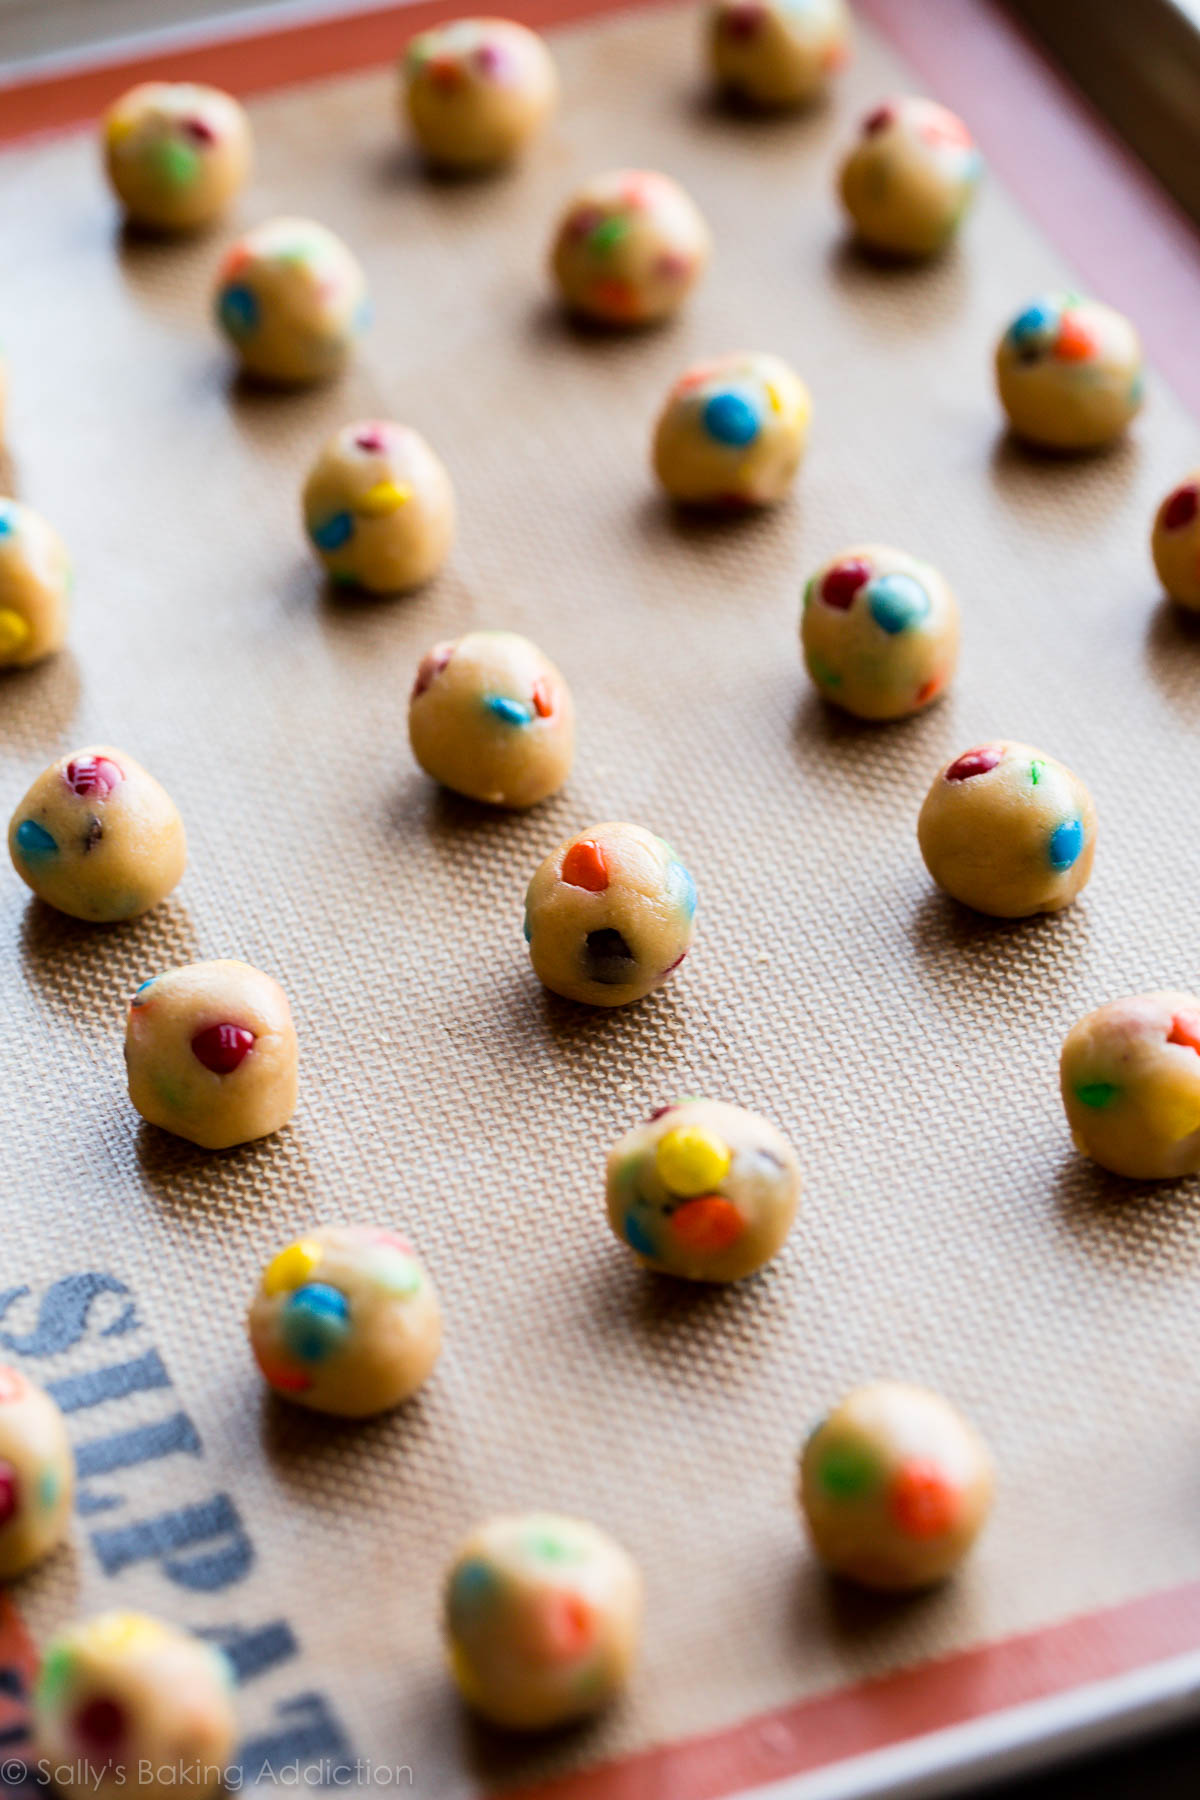 Comment faire des mini cookies M&M super minuscules et adorables sur sallysbakingaddiction.com